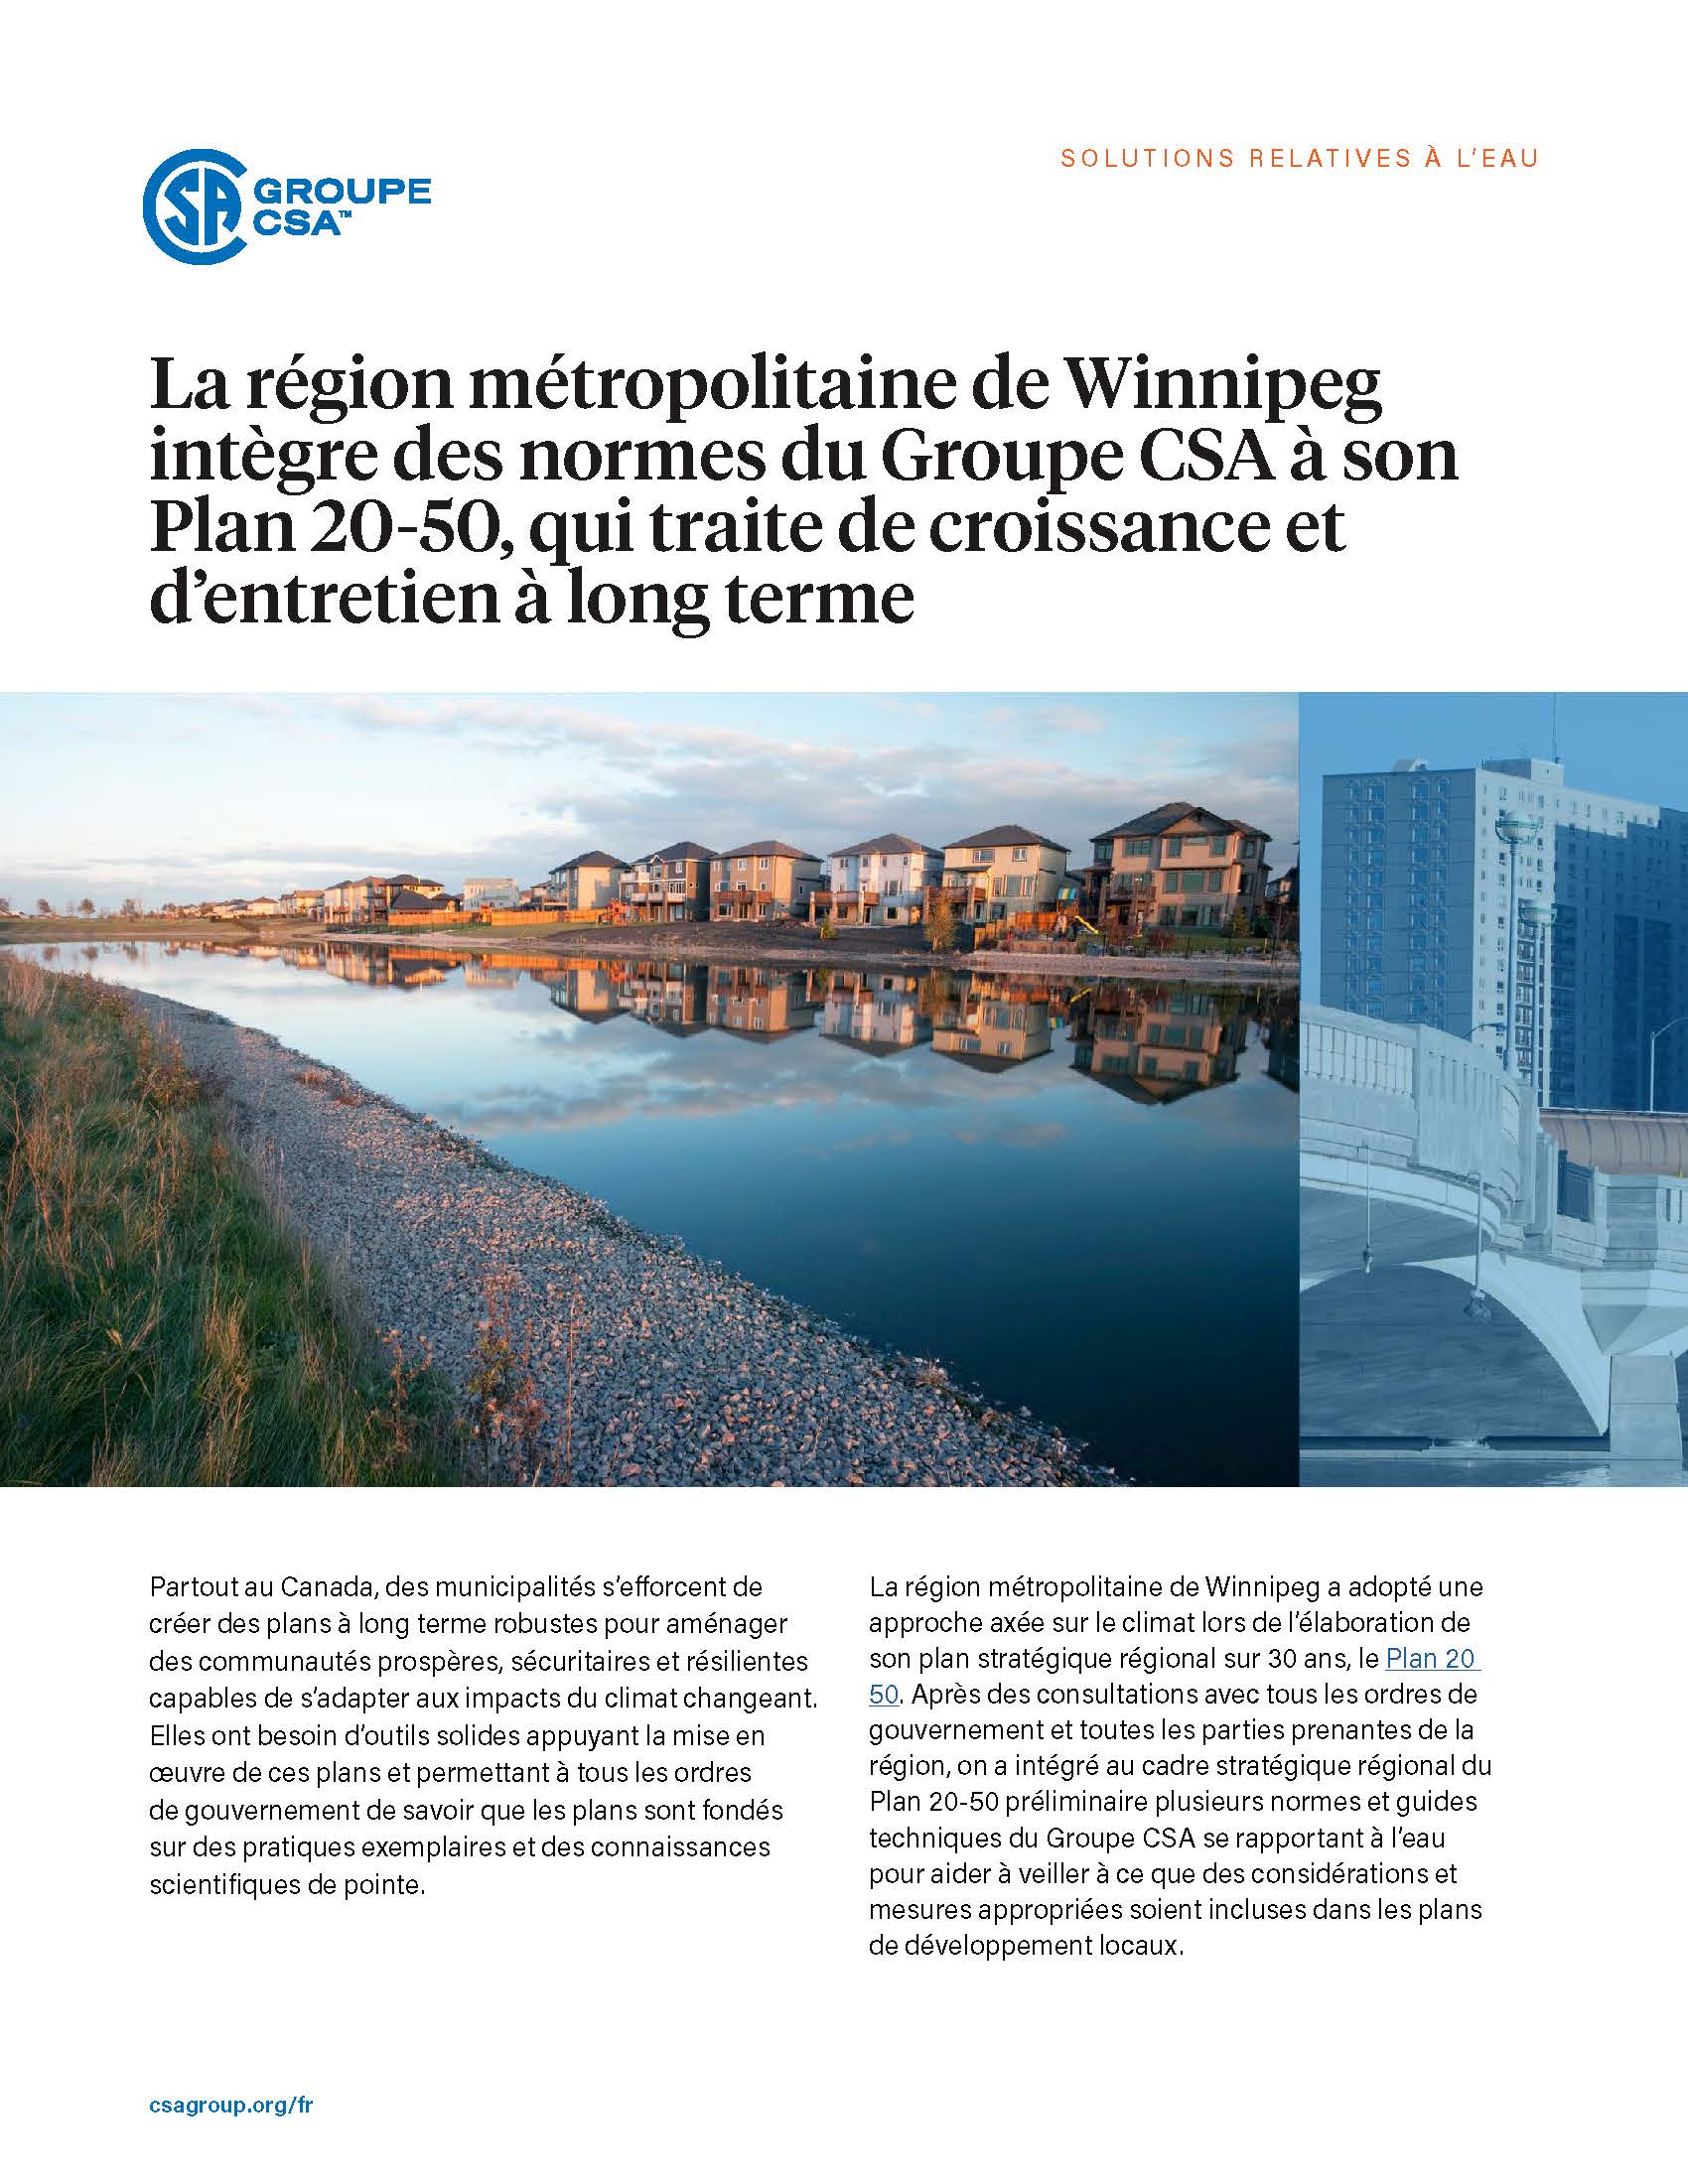 La région métropolitaine de Winnipeg intègre des normes du Groupe CSA à son Plan 20-50